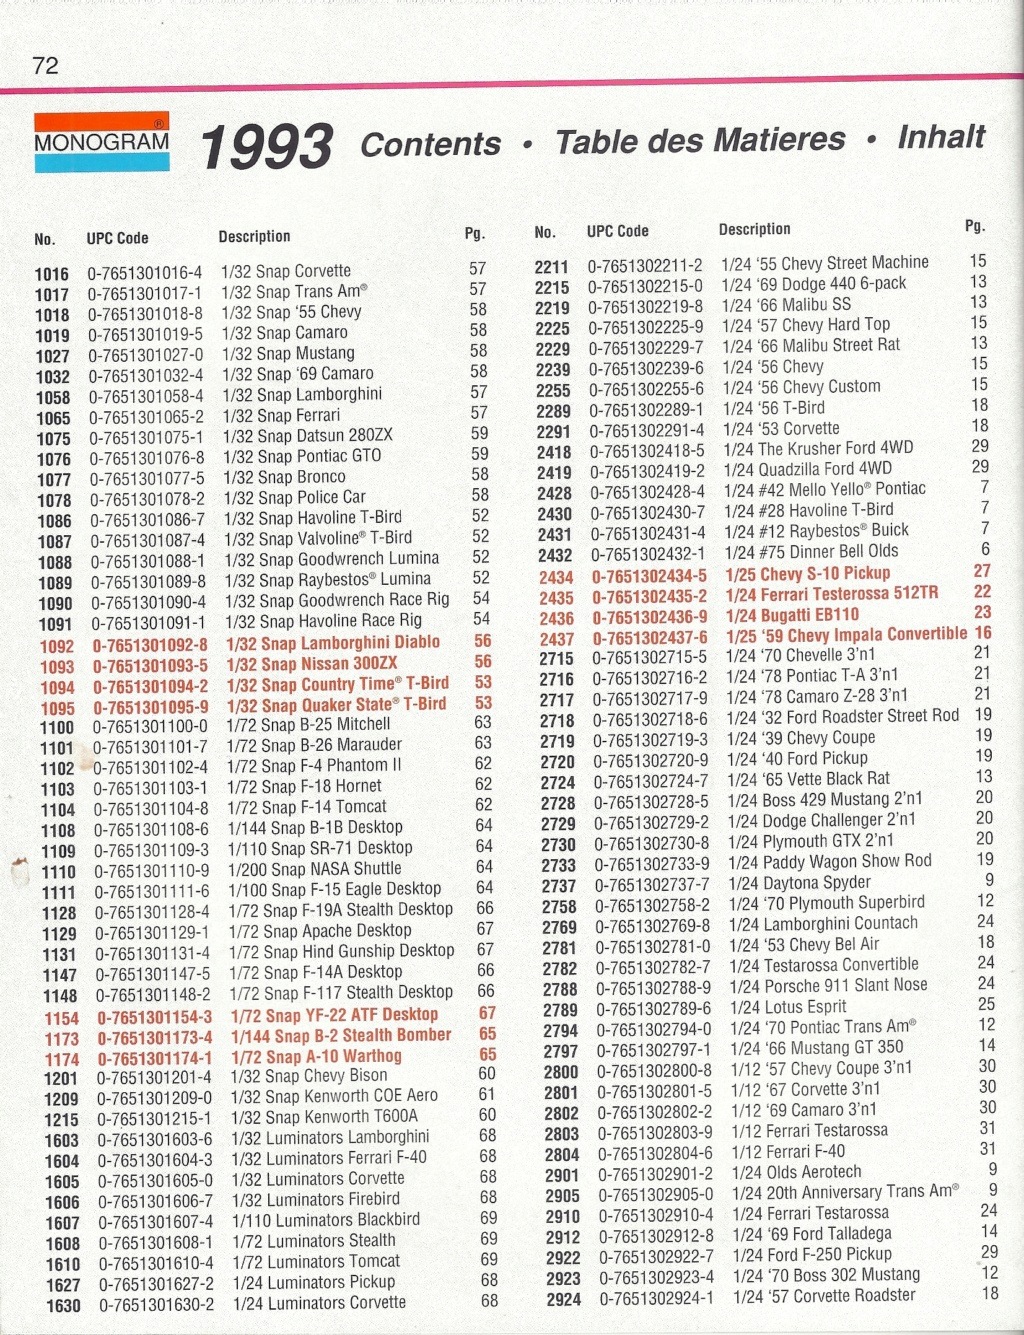 [MONOGRAM 1993] Catalogue 1993 Monog534